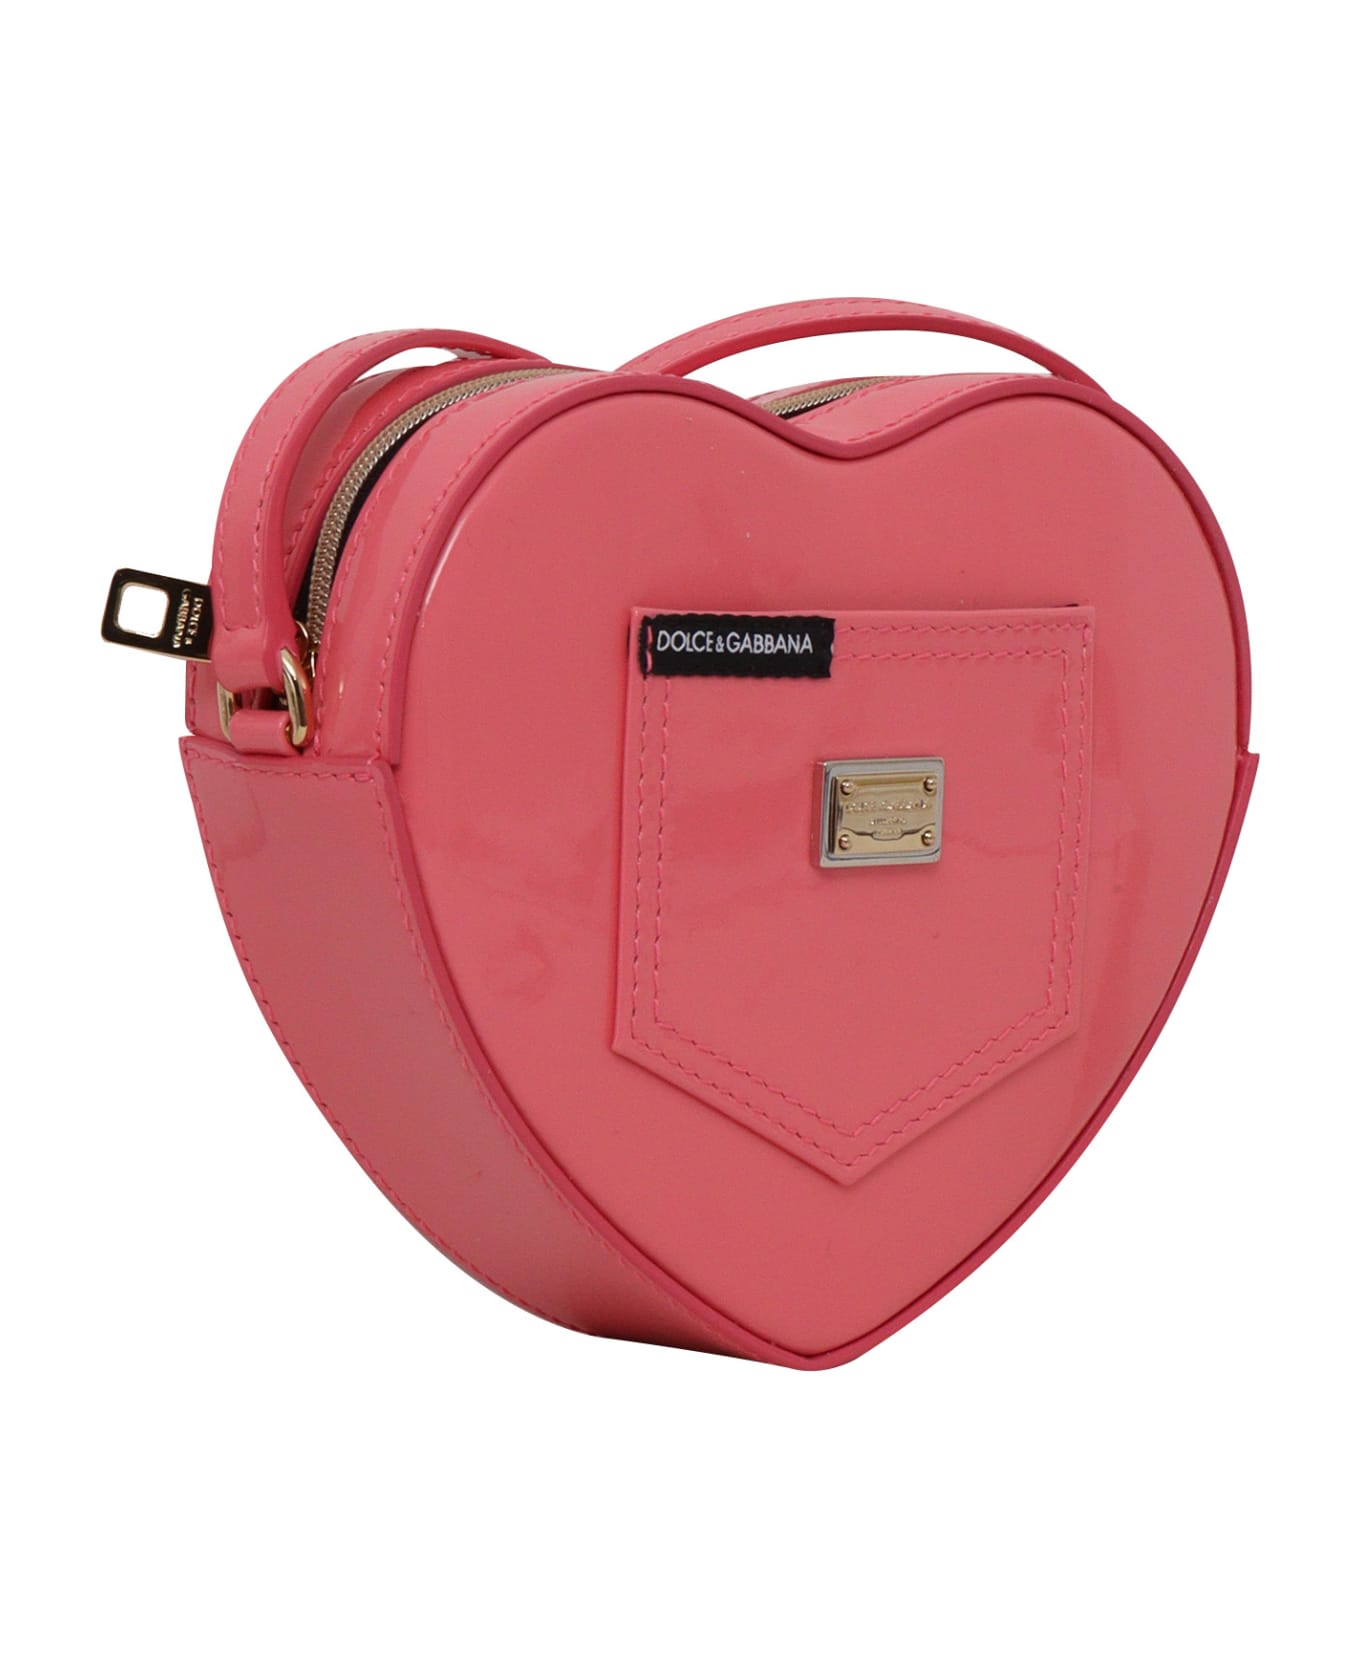 Dolce & Gabbana Heart Shaped Bag - FUCHSIA